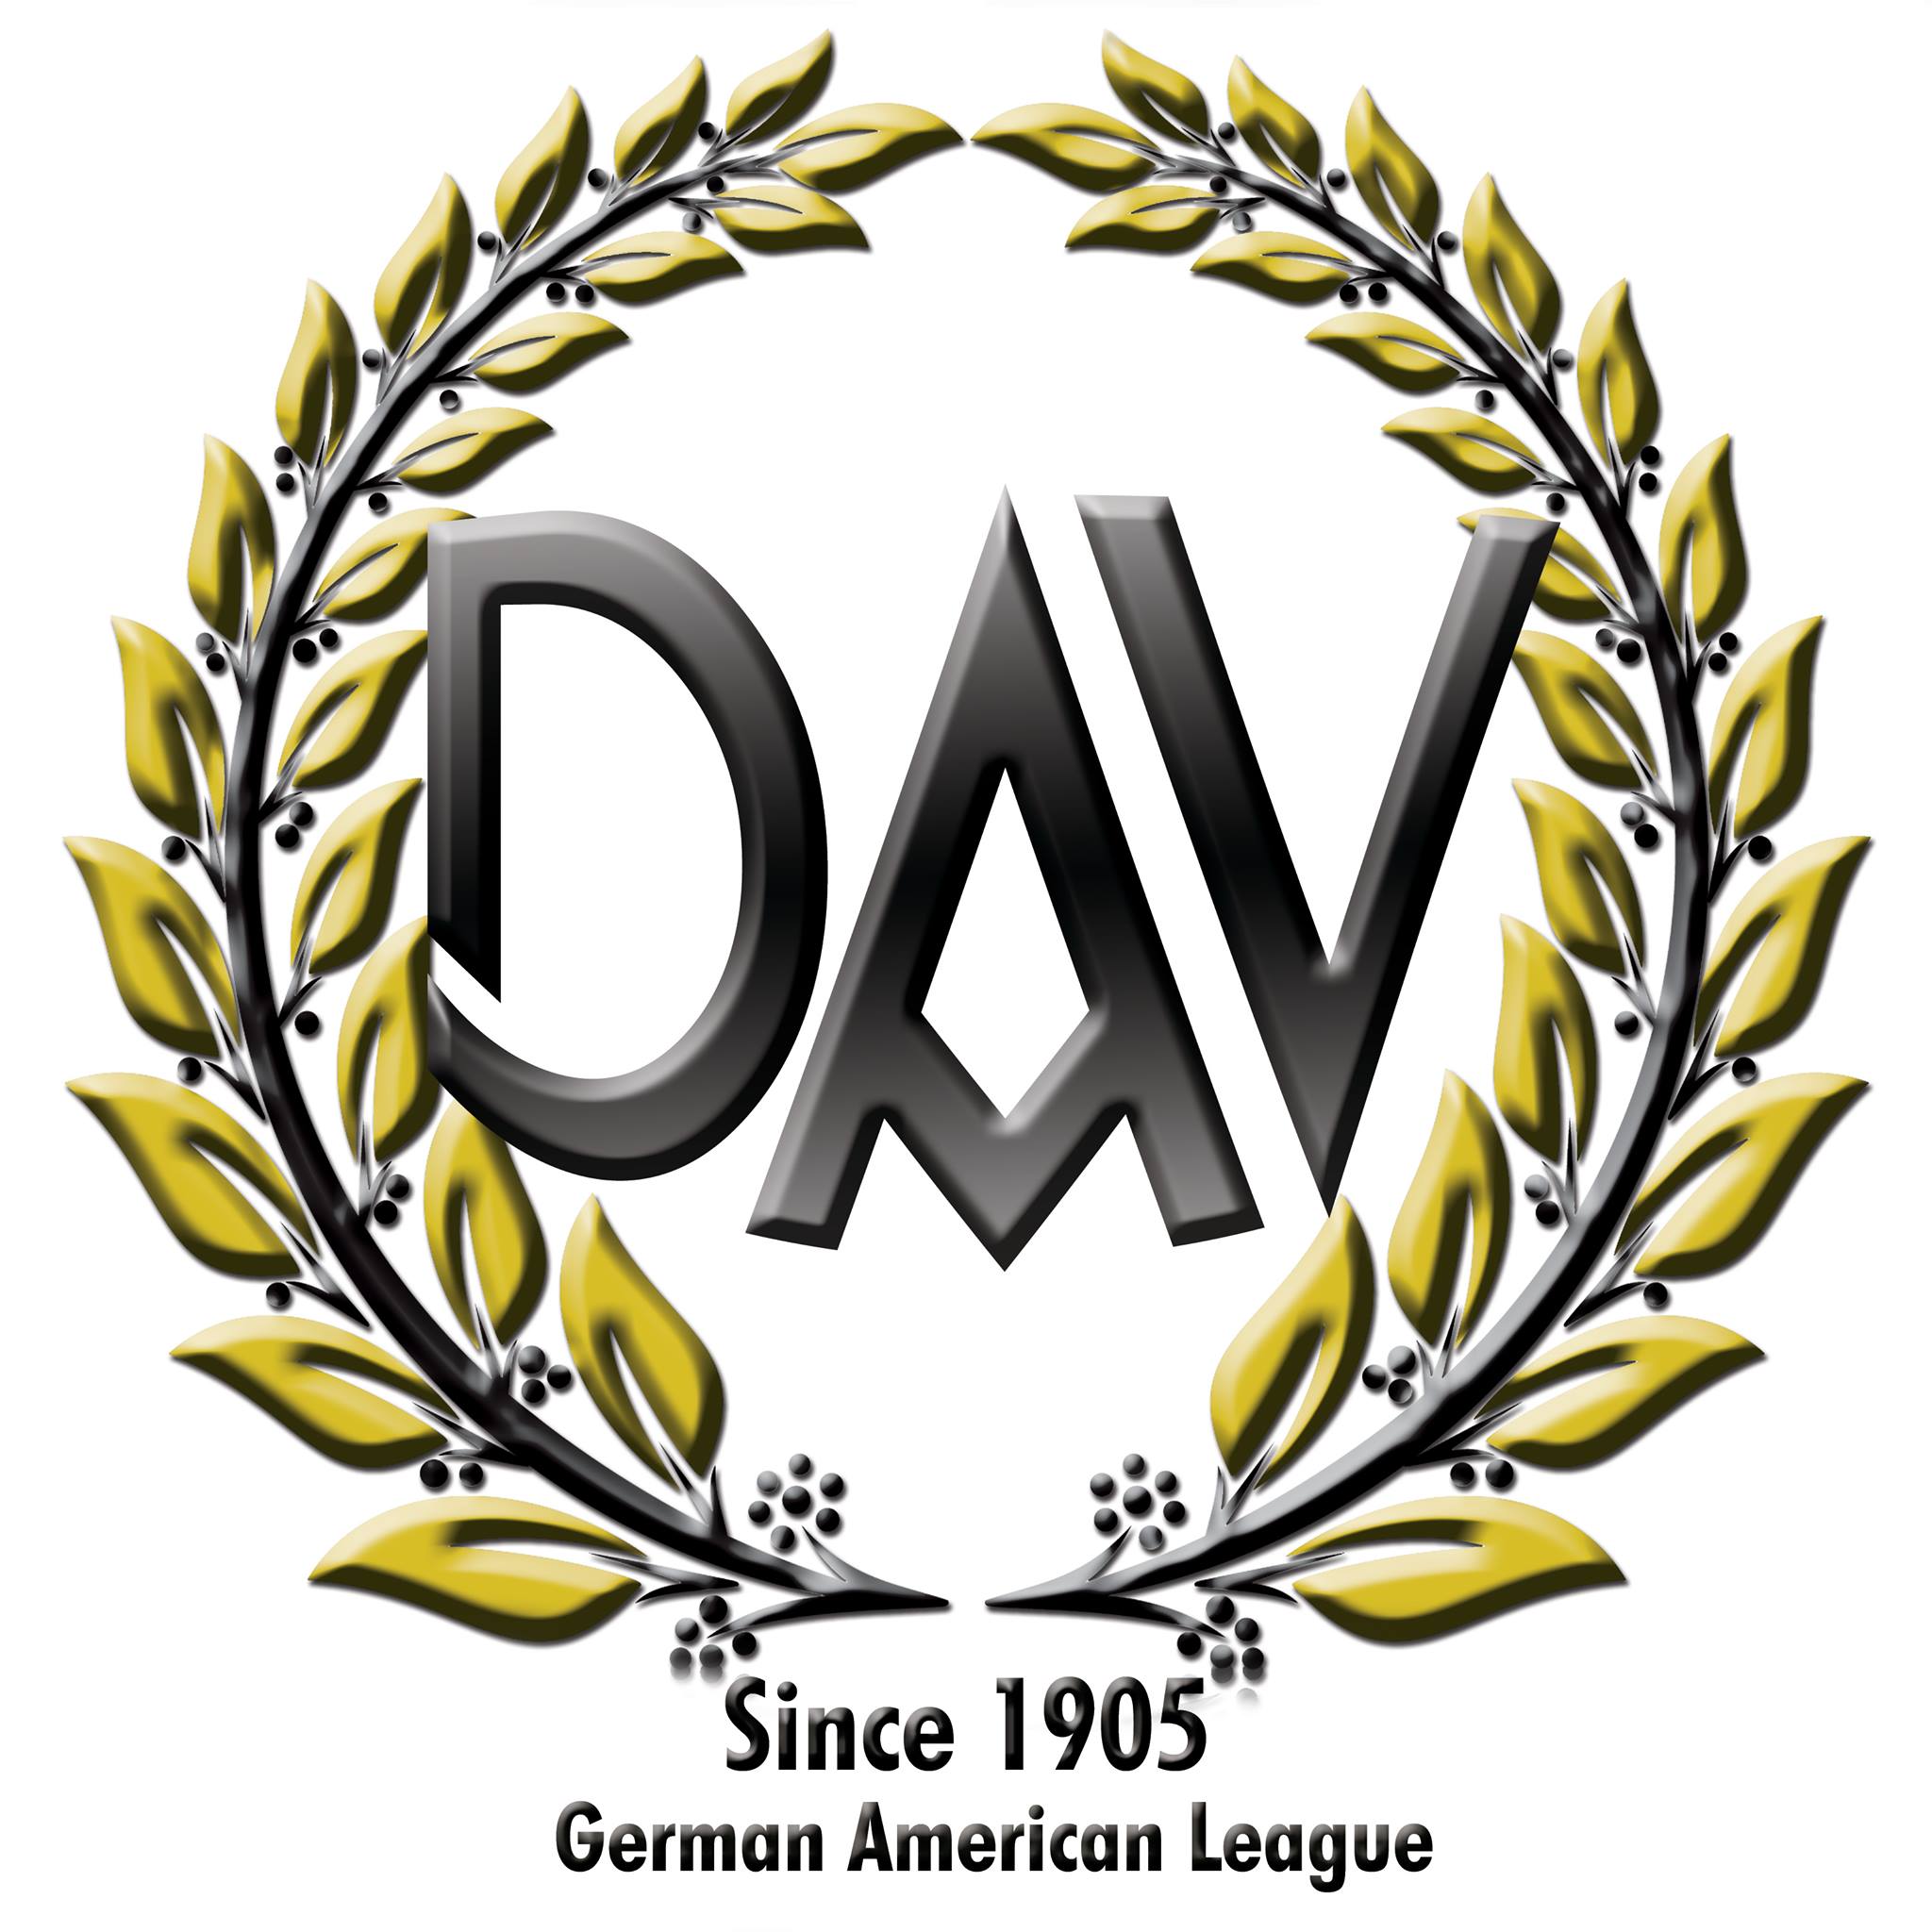 German Speaking Organizations in Los Angeles California - German-American League of Los Angeles, Inc., Ltd.